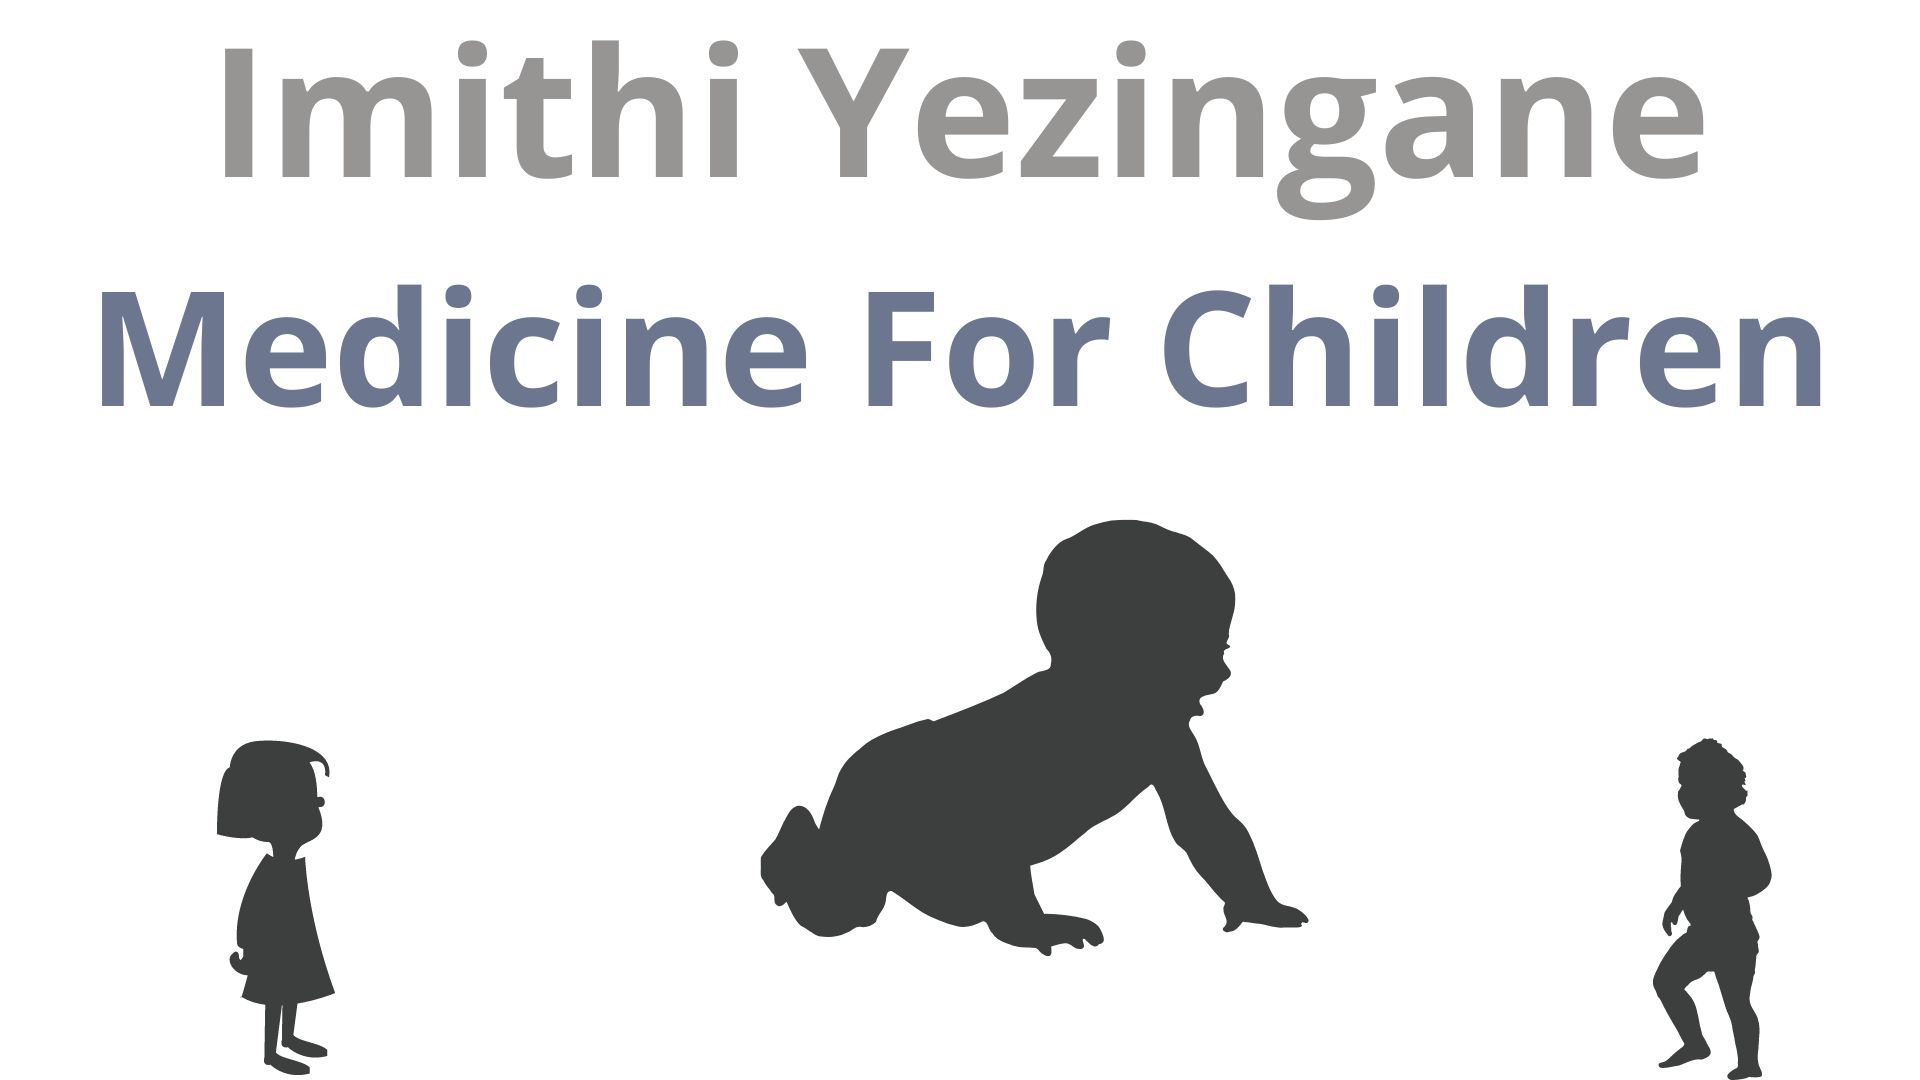 Children's medicine